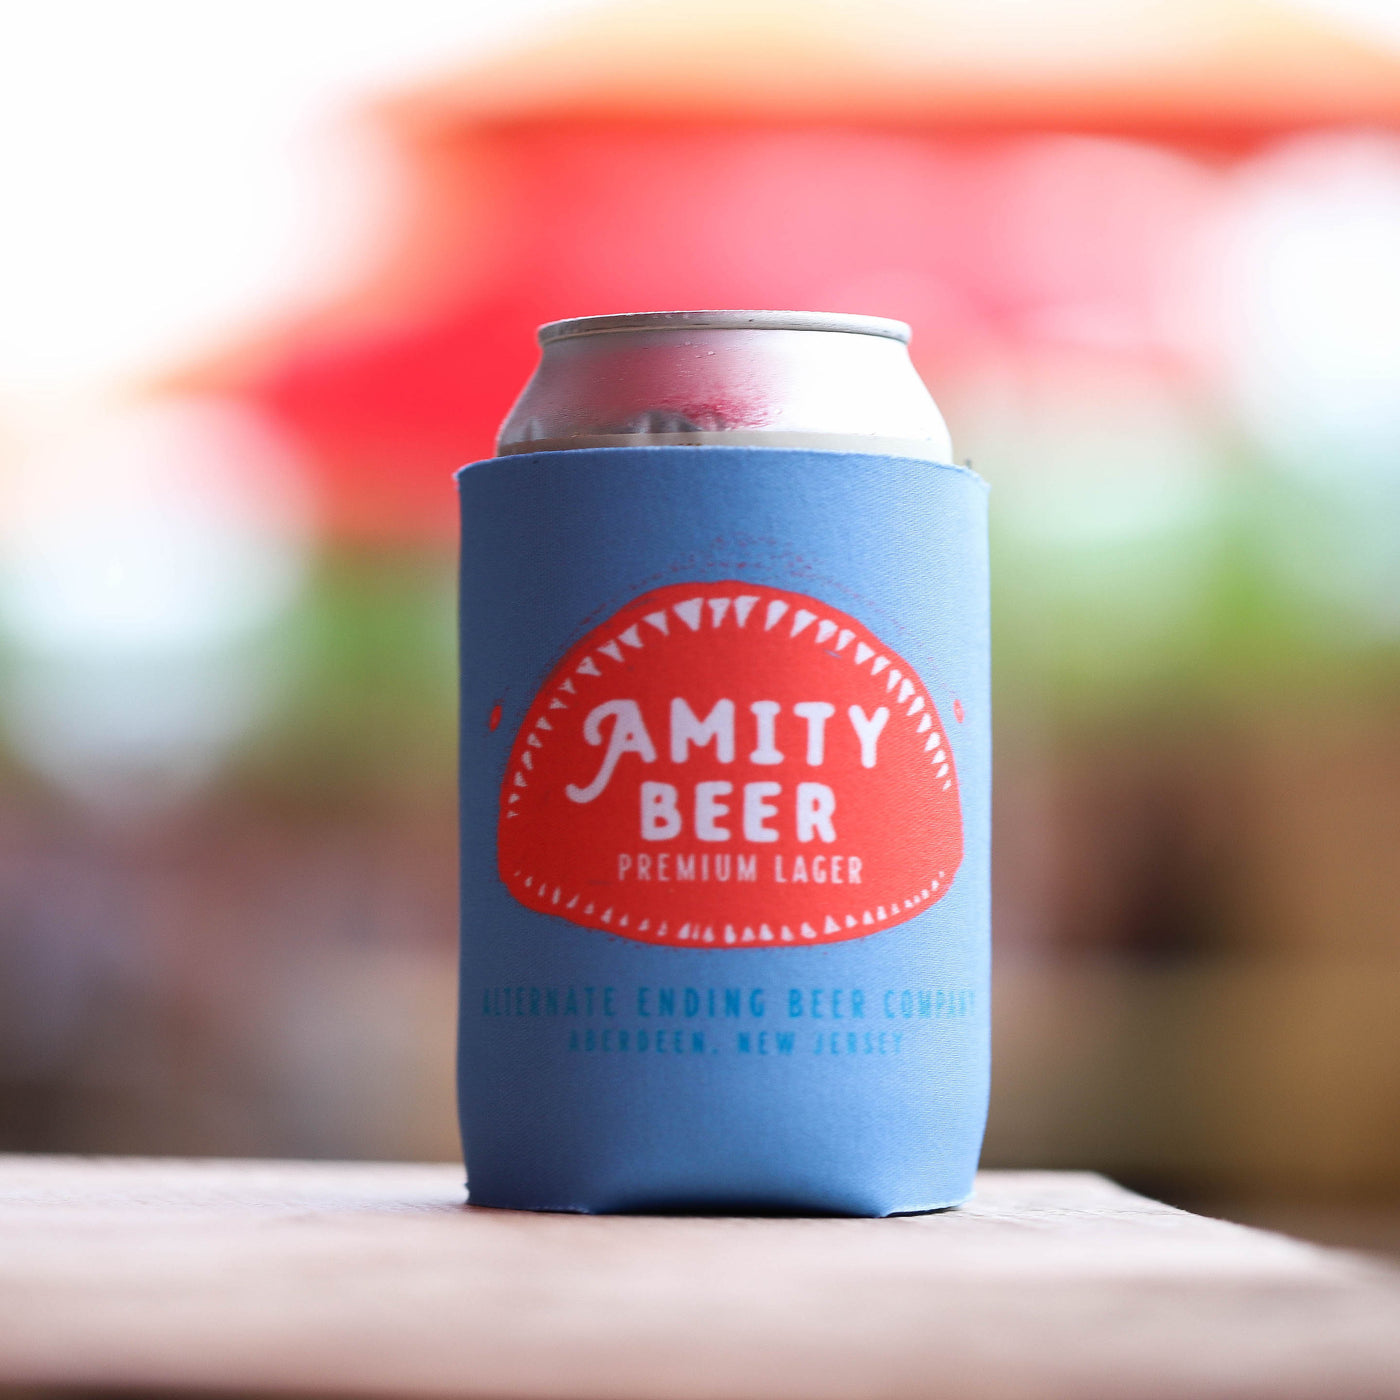 Alternate Ending Beer Co. Amity Beer Koozie